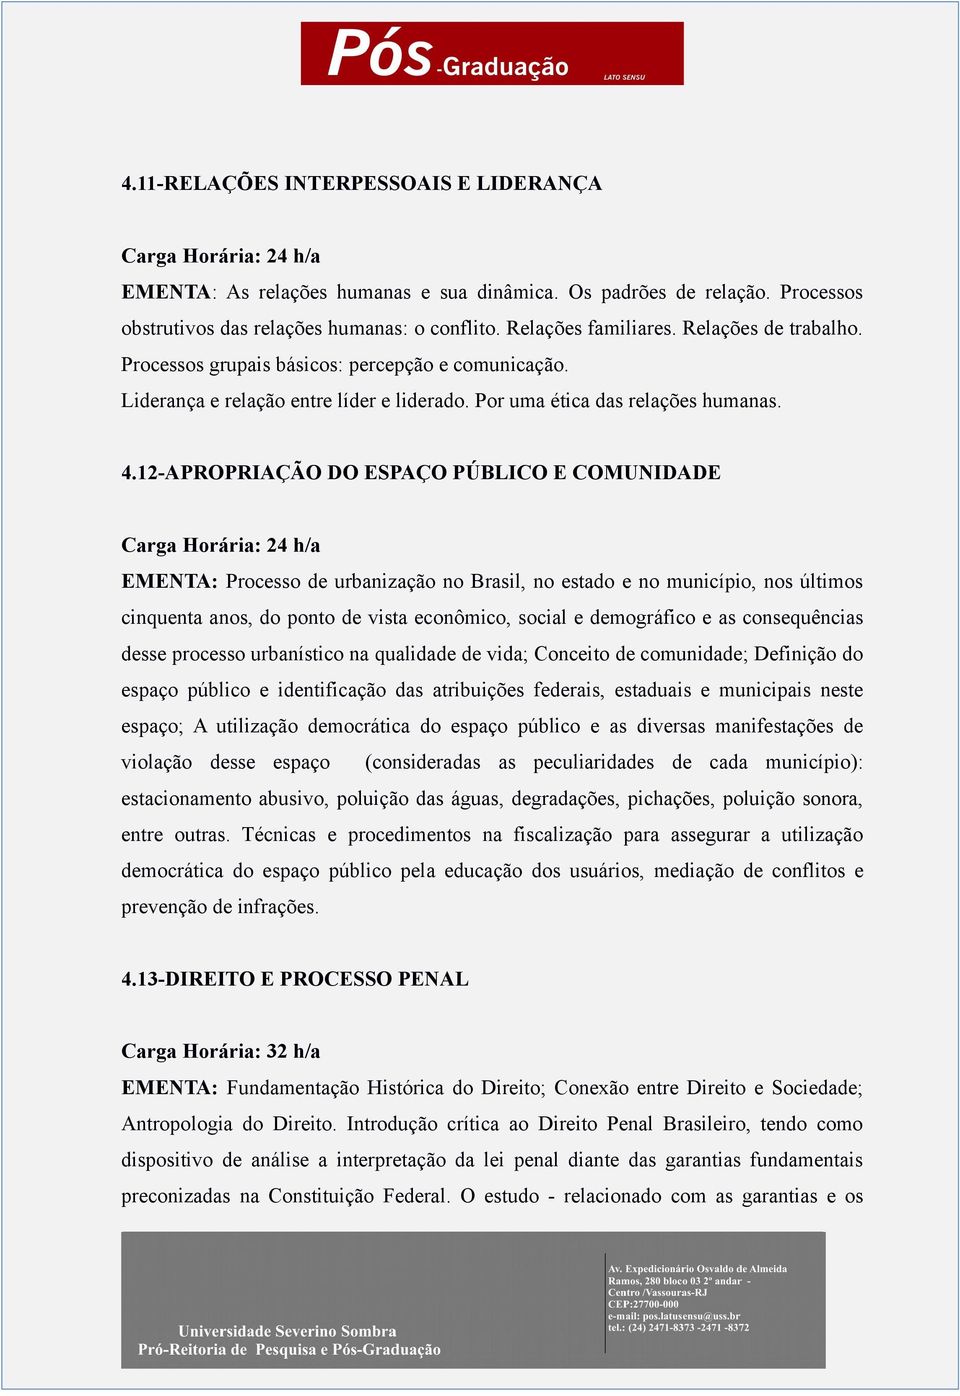 12-APROPRIAÇÃO DO ESPAÇO PÚBLICO E COMUNIDADE EMENTA: Processo de urbanização no Brasil, no estado e no município, nos últimos cinquenta anos, do ponto de vista econômico, social e demográfico e as